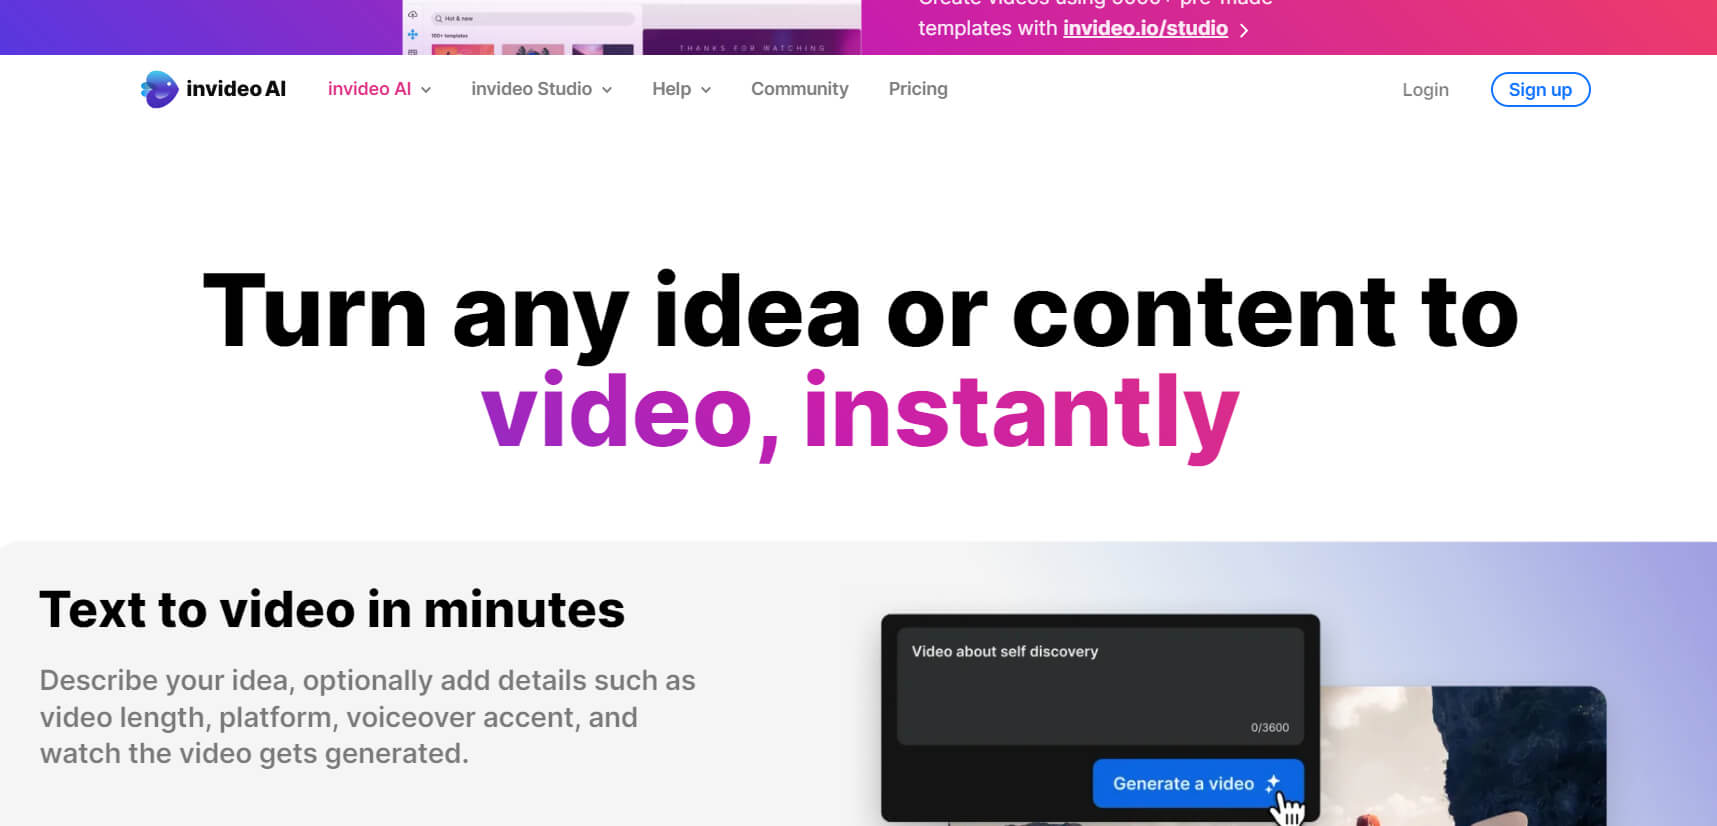  InVideo é uma plataforma de edição de vídeo online que permite aos usuários criar vídeos profissionais em poucos minutos. Com uma ampla variedade de modelos, recursos e ferramentas de edição, o InVideo torna a criação de vídeos fácil e acessível para todos. Além disso, a plataforma oferece uma biblioteca de mídia com milhões de imagens, vídeos e músicas livres de direitos autorais para adicionar ao seu vídeo 